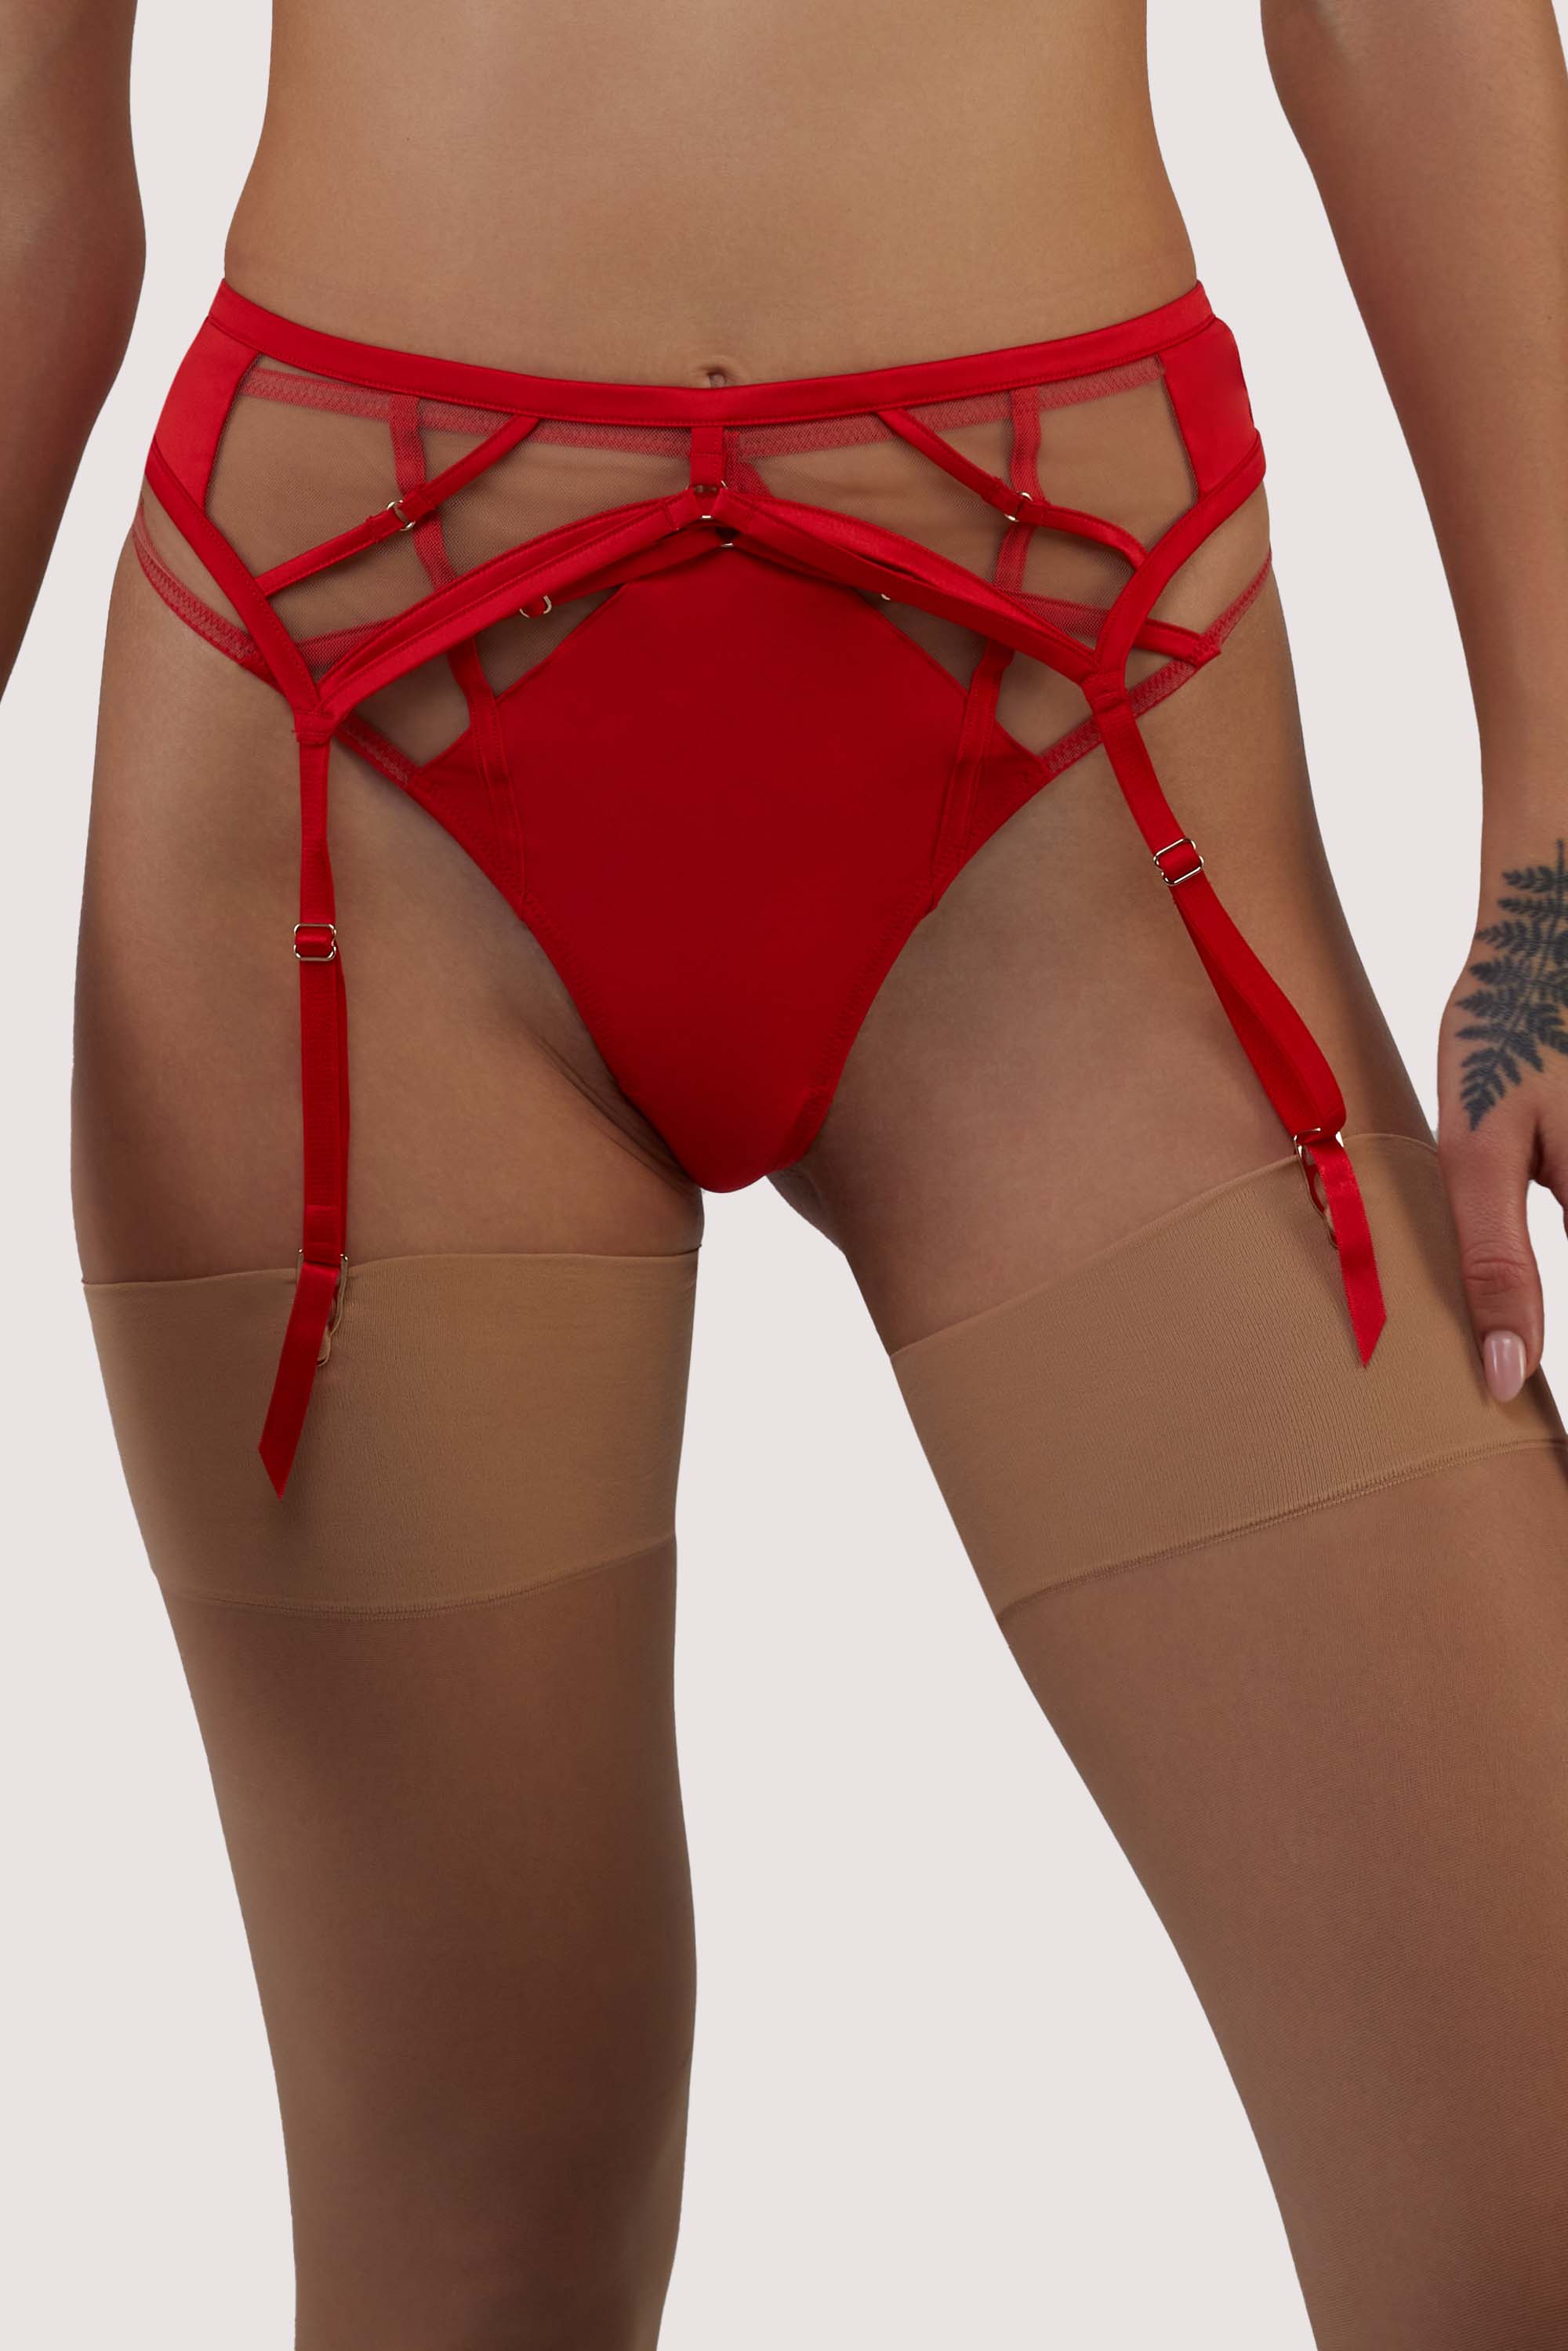 Ramona red Strap Detail Illusion Mesh Suspender 20